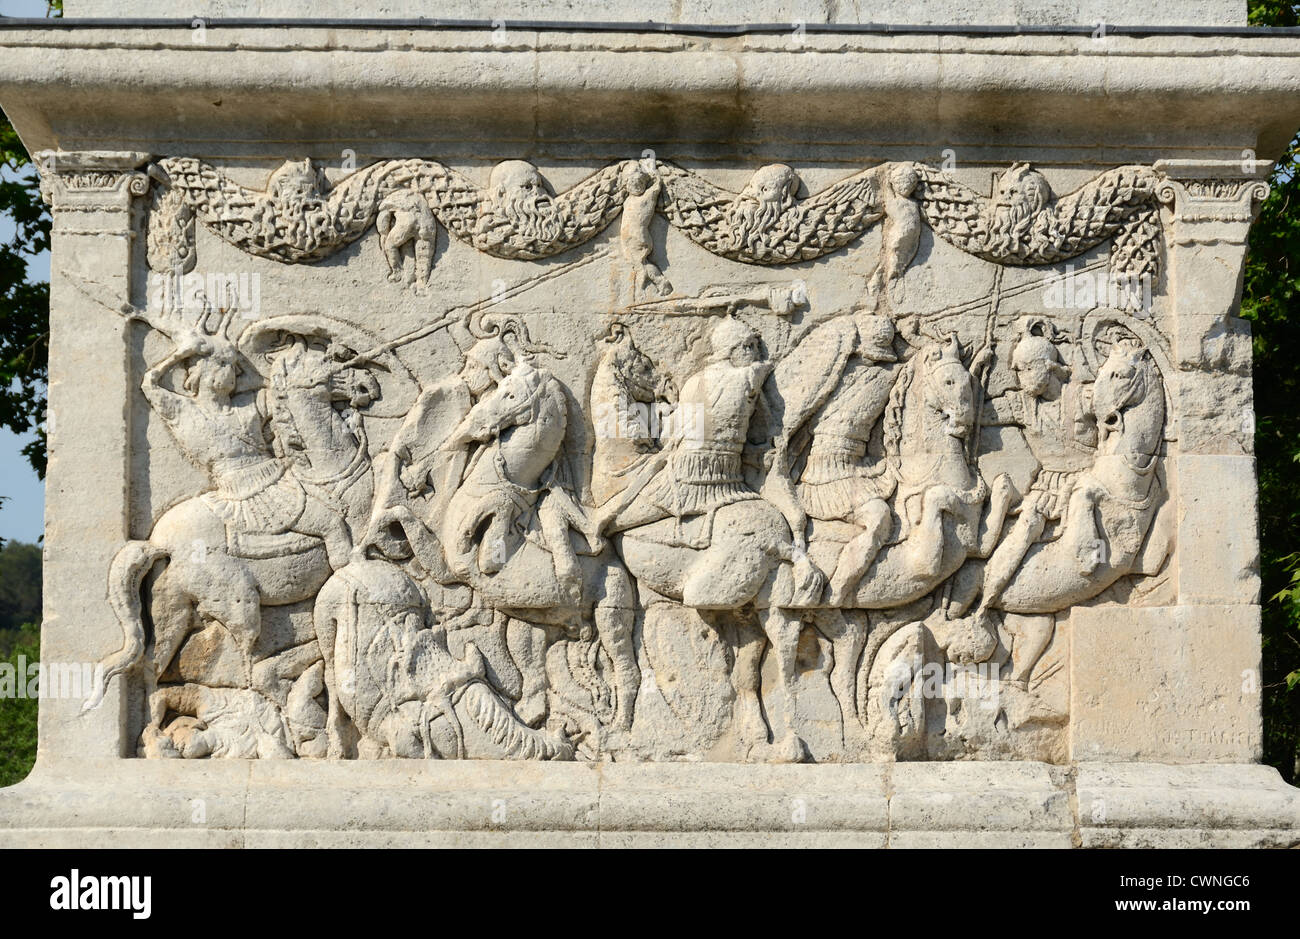 Bas-reliefs de soldats romains ou de l'armée romaine combattant en scène de bataille sur le mausolée du Julii (c40BC) Glanum Saint-Rémy-de-Provence France Banque D'Images